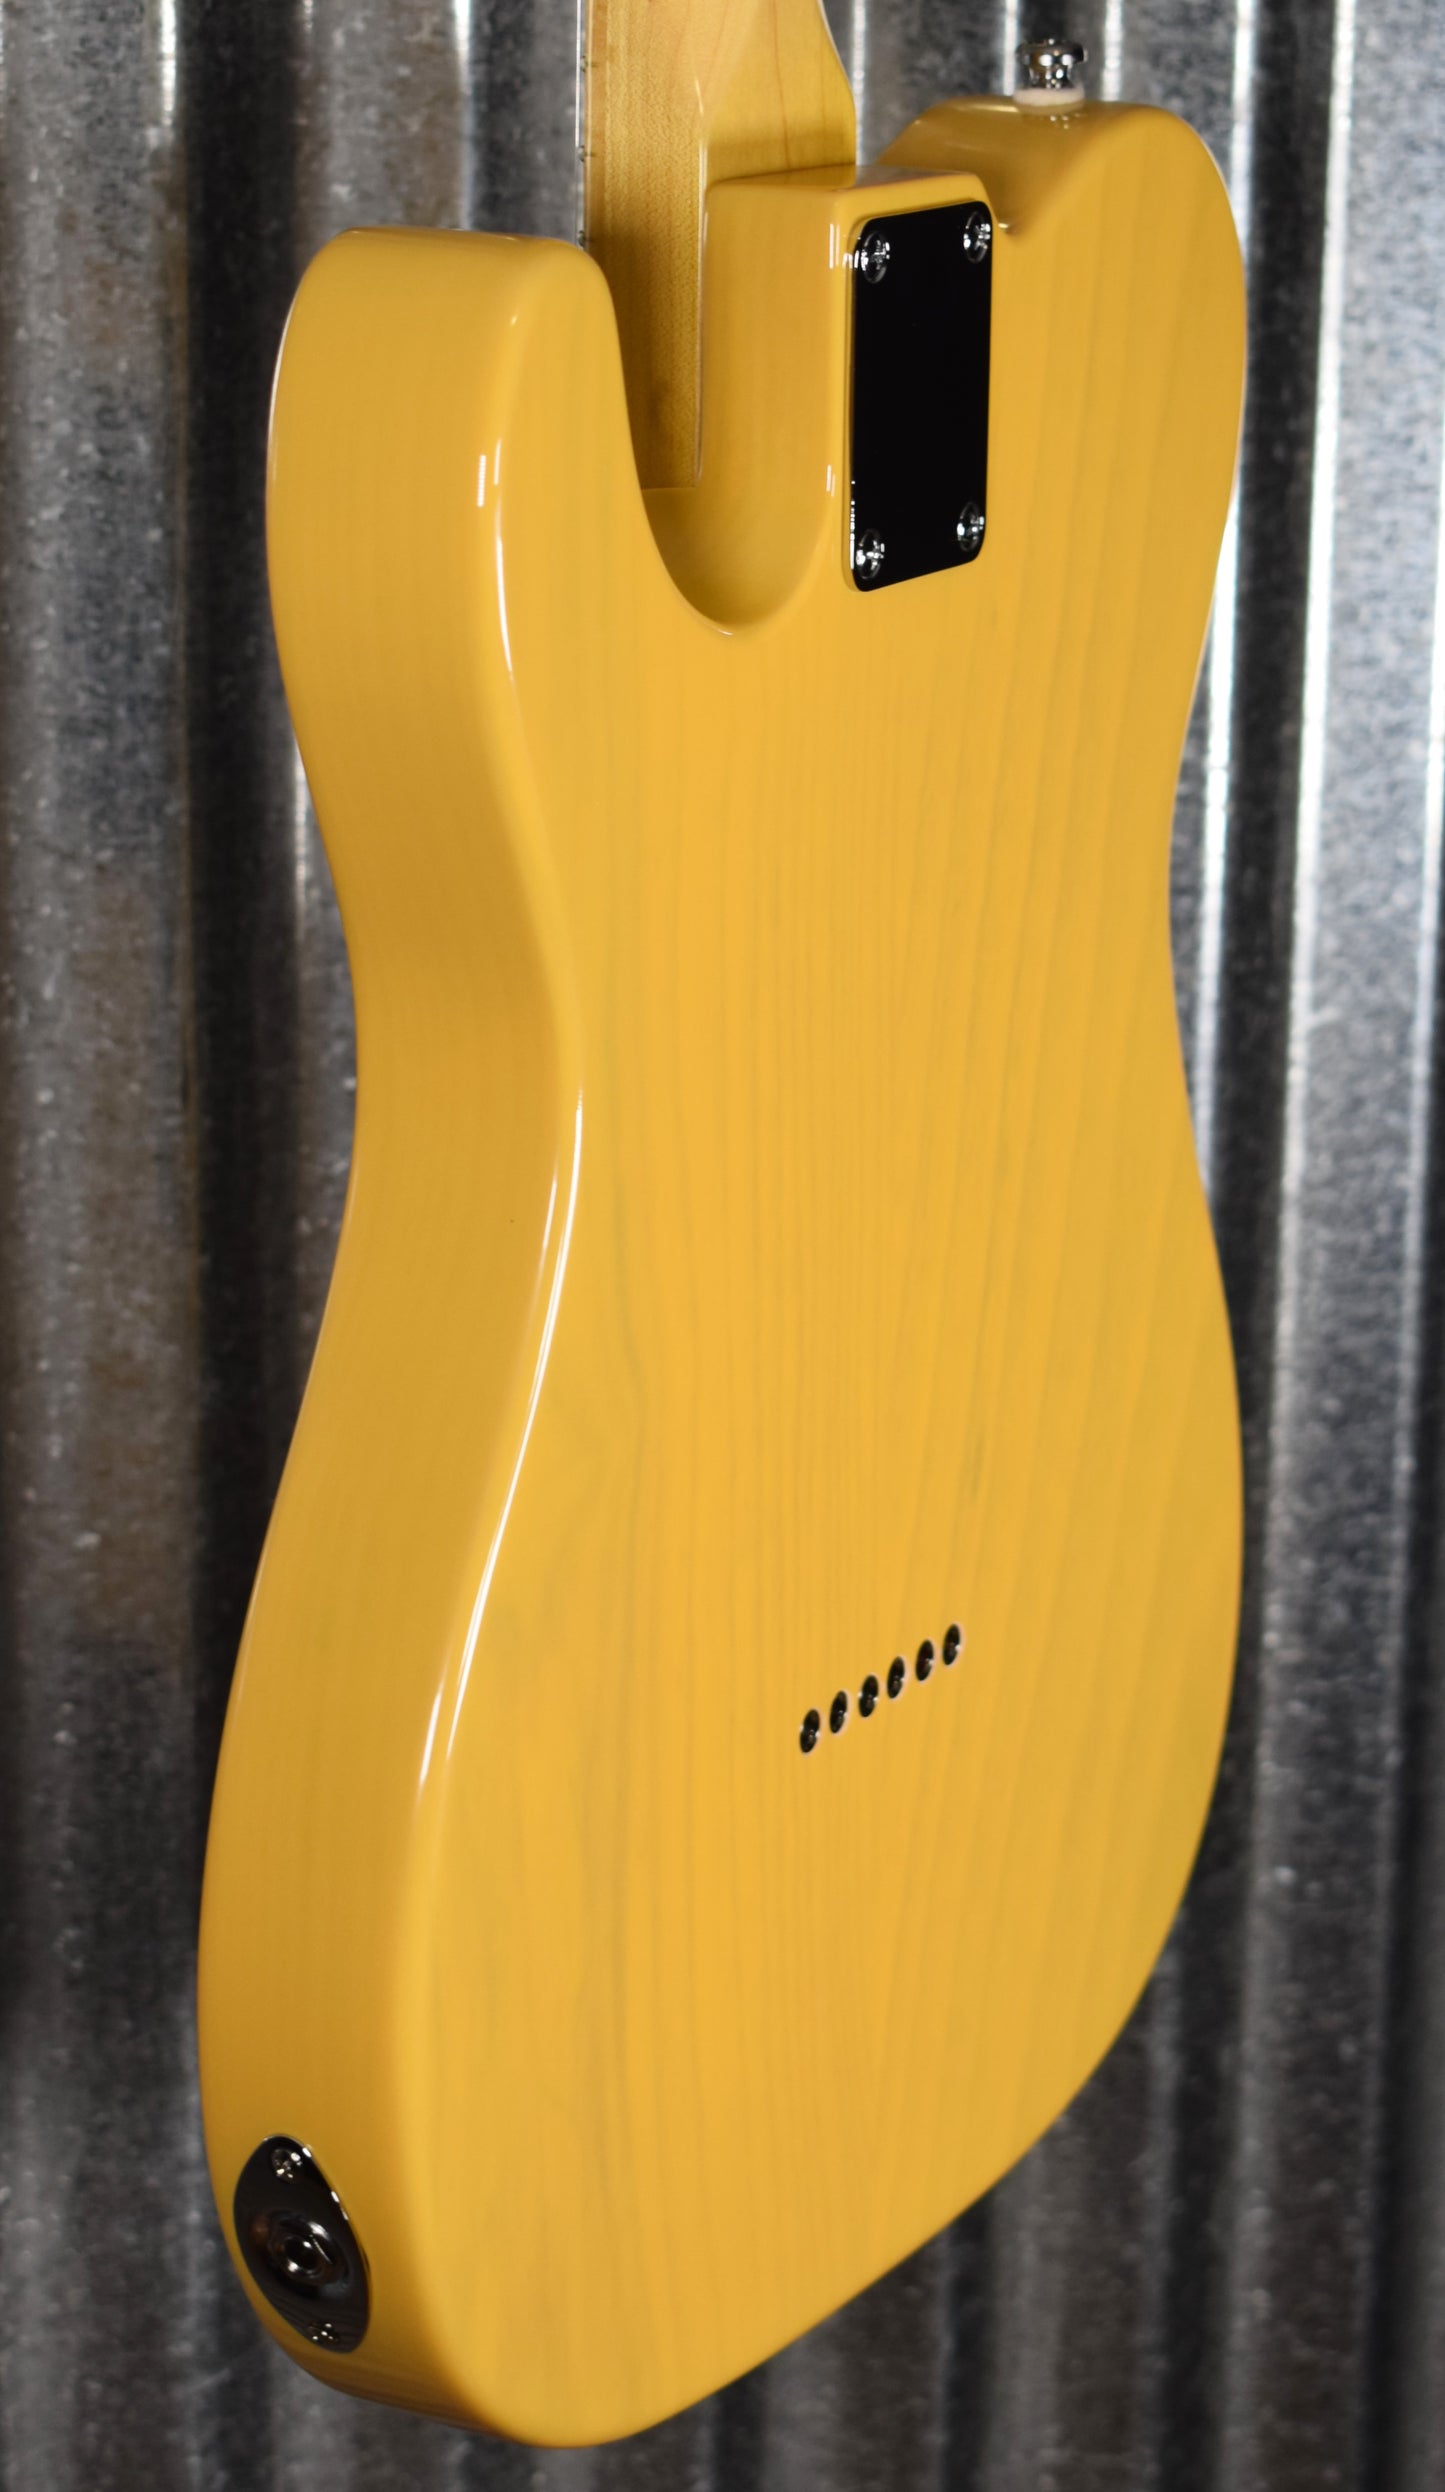 G&L Tribute ASAT Classic Butterscotch Blonde Guitar #1665 Demo